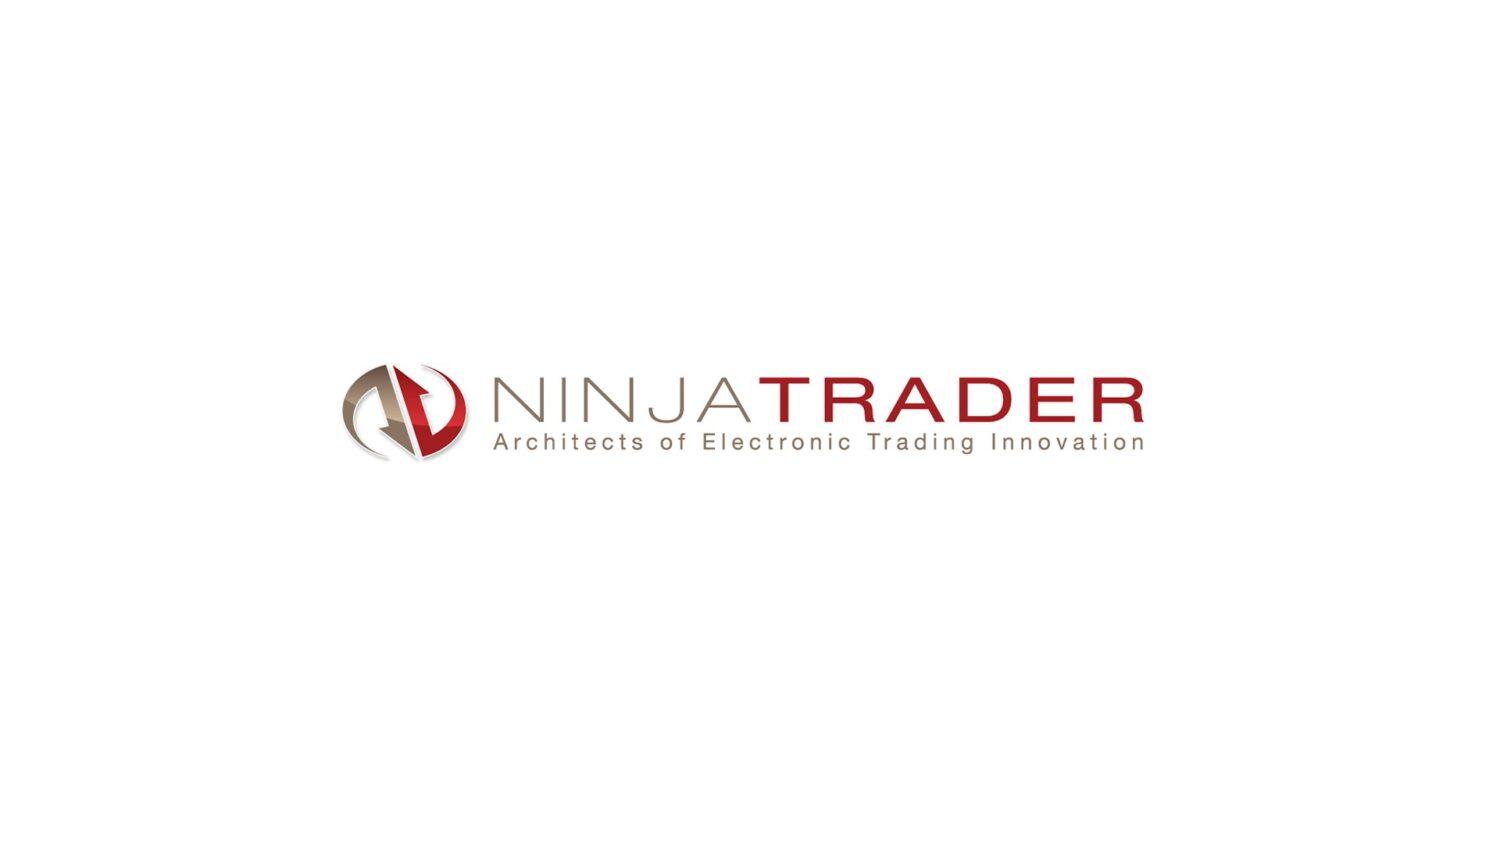 Обзор NinjaTrader – как показала себя эта платформа по сравнению с другими?